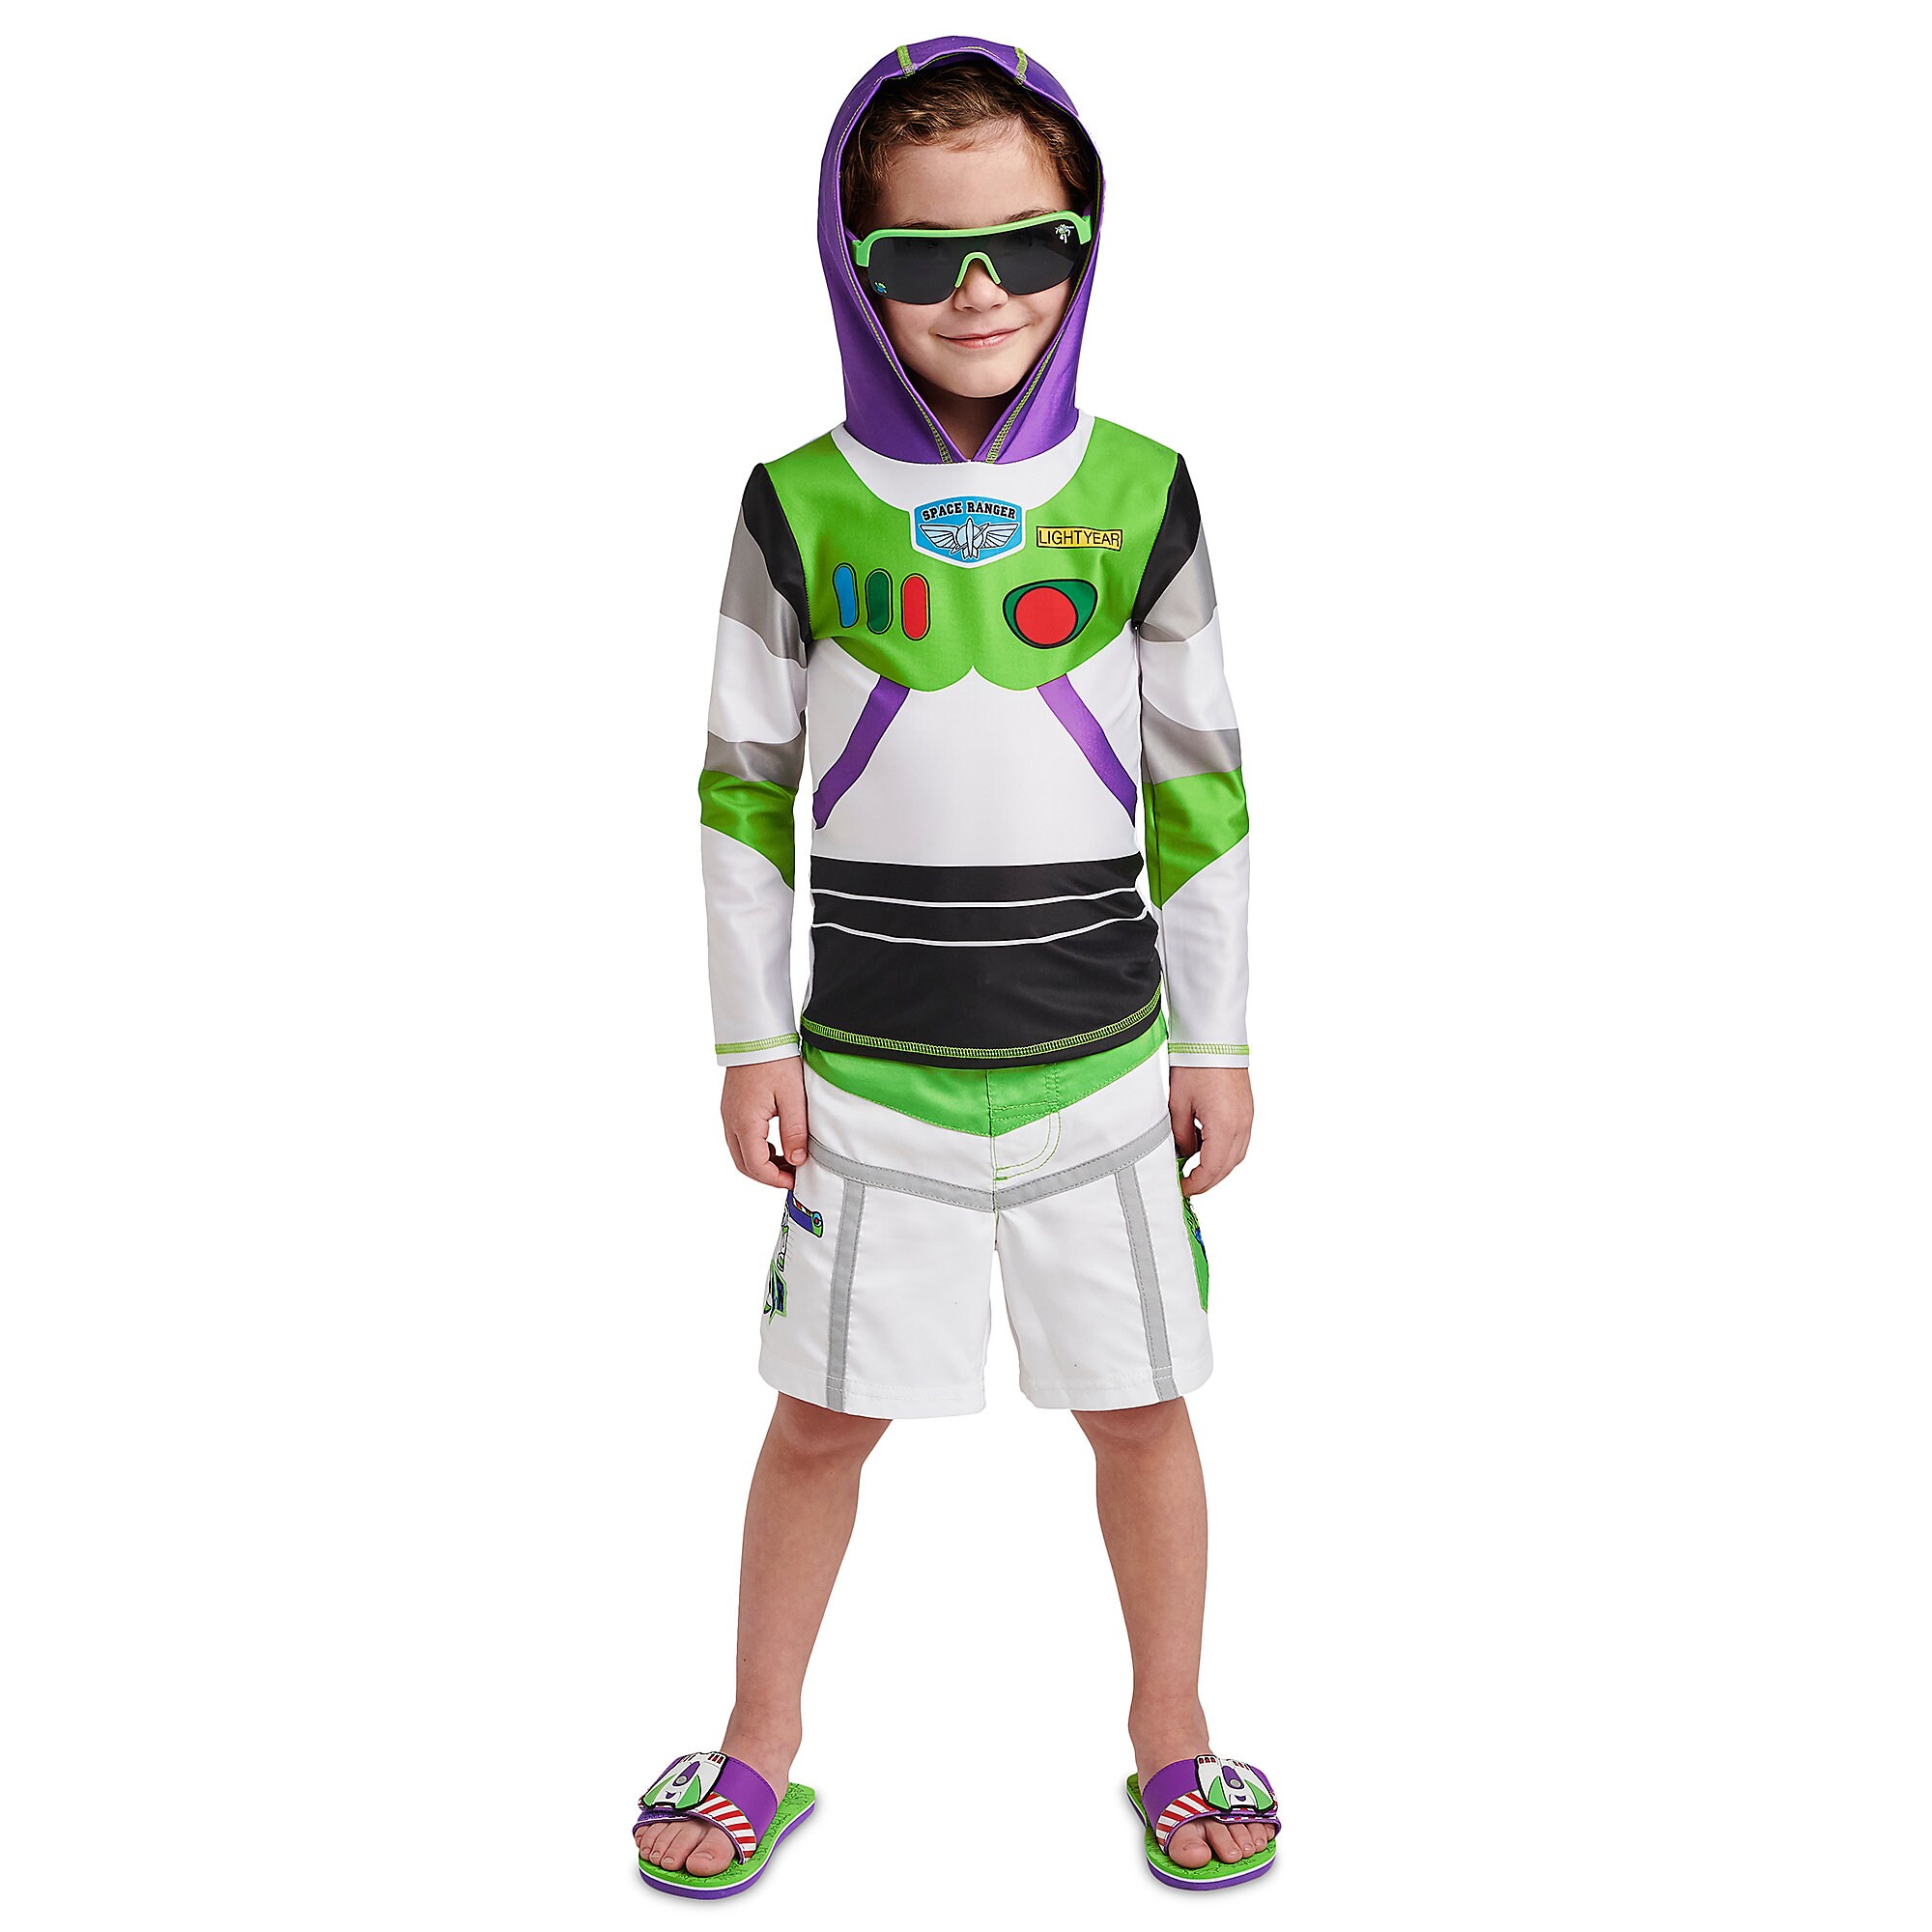 Buzz Lightyear Swim Trunks for Kids